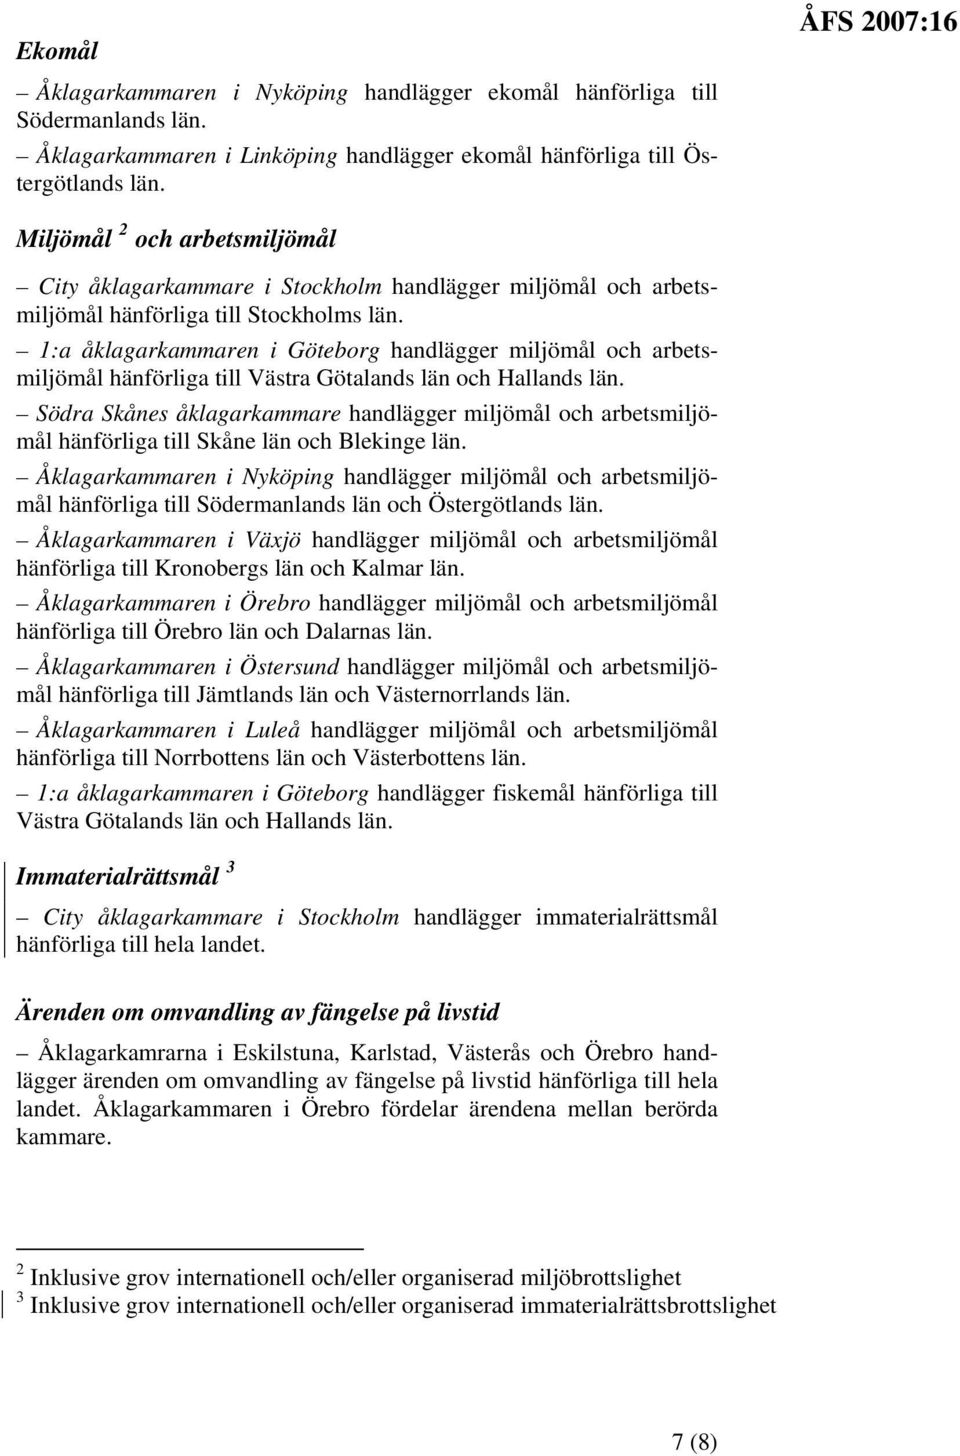 1:a åklagarkammaren i handlägger miljömål och arbetsmiljömål hänförliga till Västra Götalands län och Hallands län.